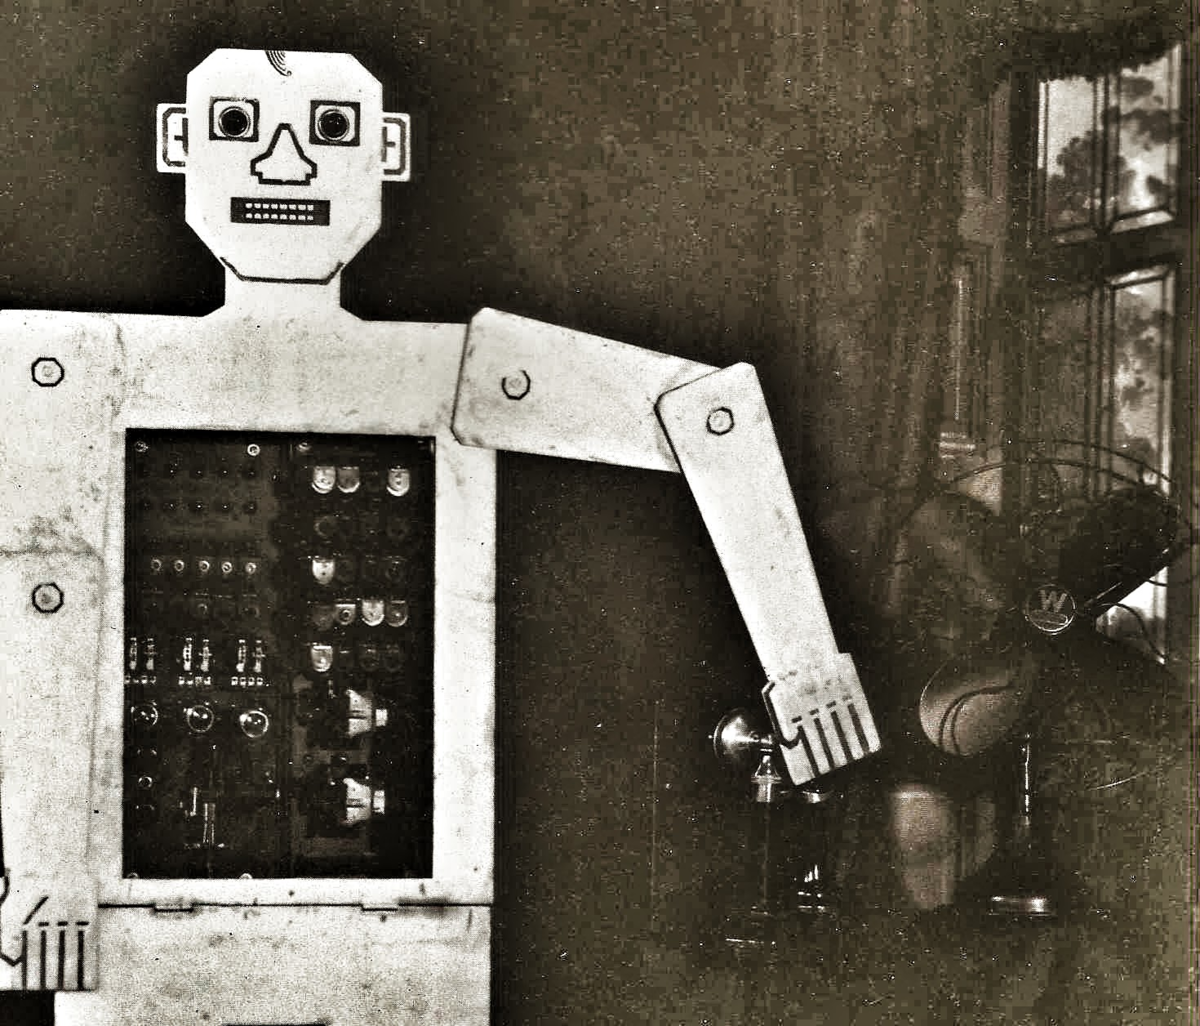 Первые роботы и краткая история развития робототехники Слова «робот» и «робототехника» (изначально звучавшее как «роботехника») придуманы и введены в мировые языки вовсе не учёными и изобретателями, а